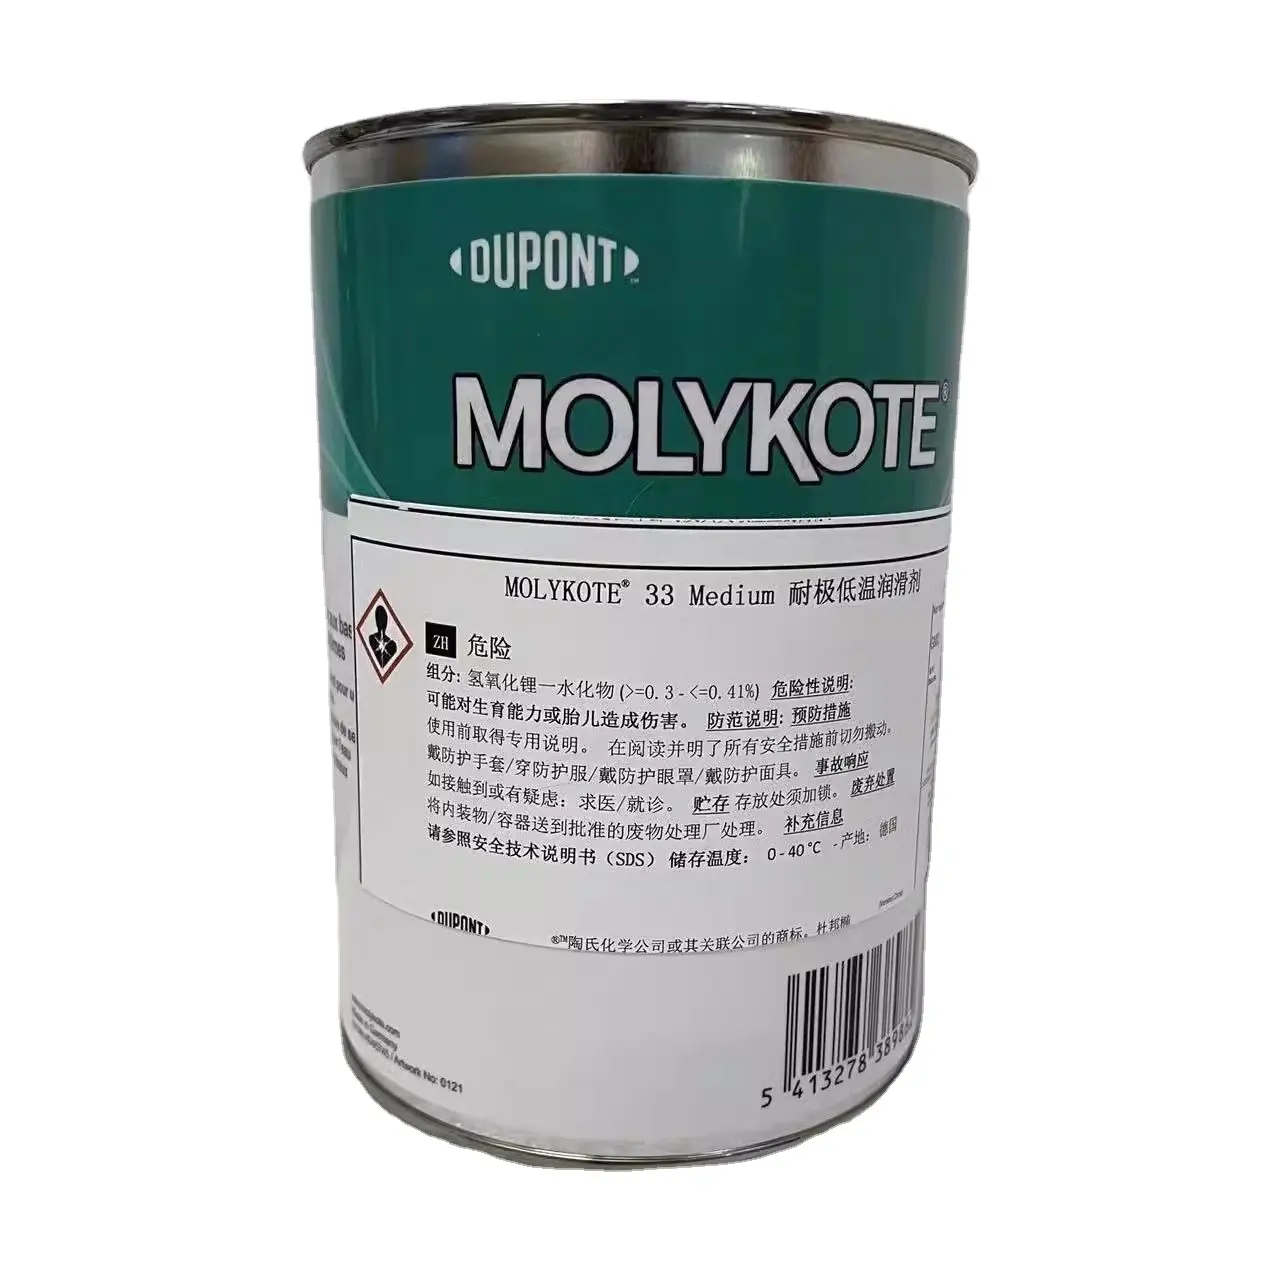 मोलिकोट 33 मध्यम कम तापमान प्रतिरोधी ग्रीस प्लास्टिक के लिए प्रशीतन उपकरण